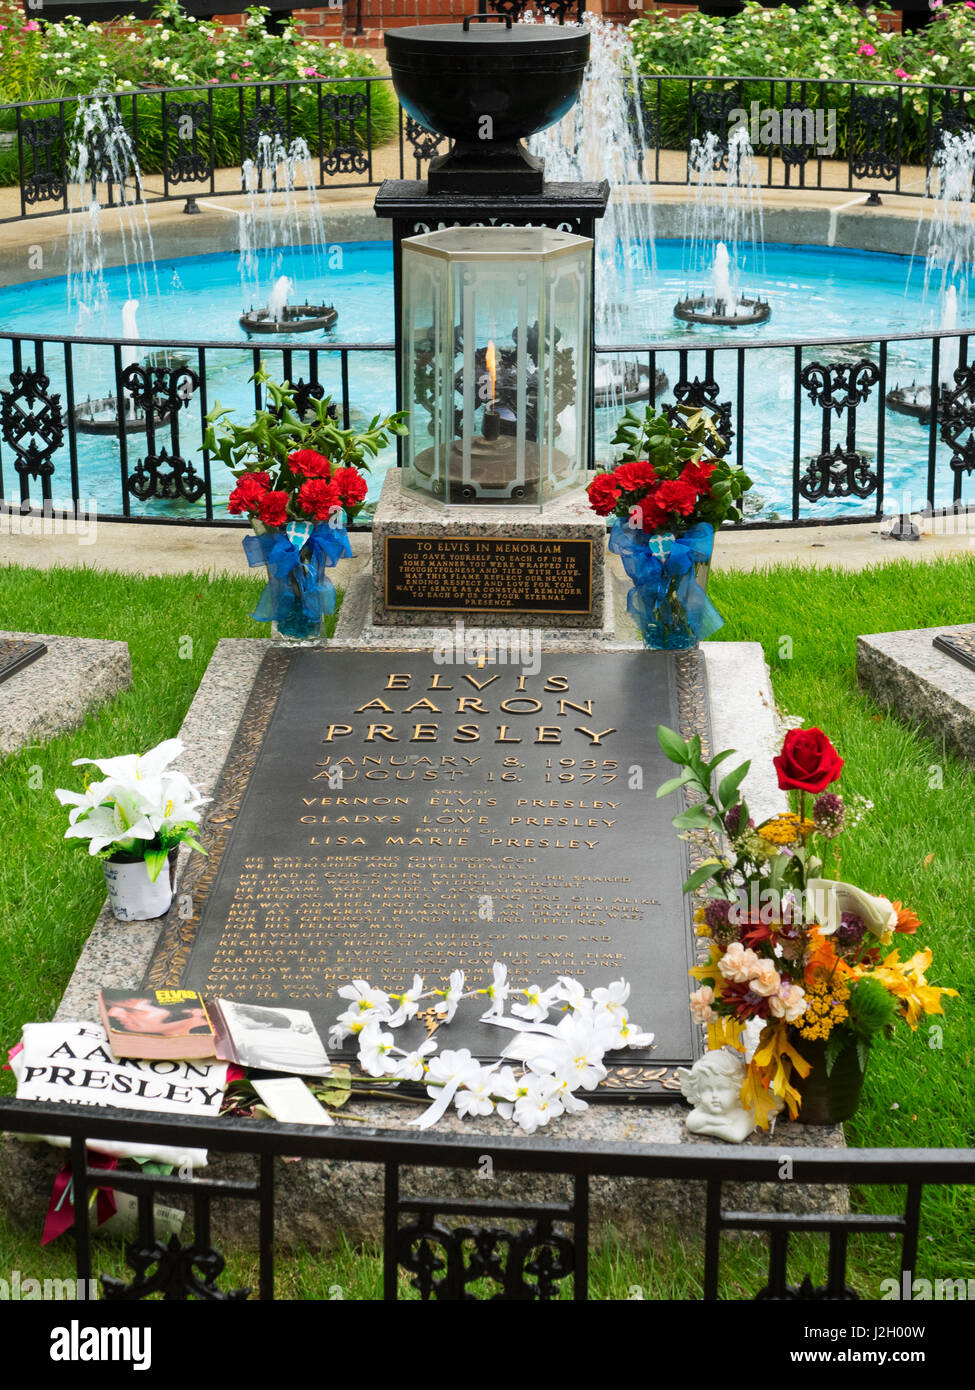 New York, Memphis, Graceland, Elvis Presley et de sépulture de Memorial (usage éditorial uniquement) Banque D'Images